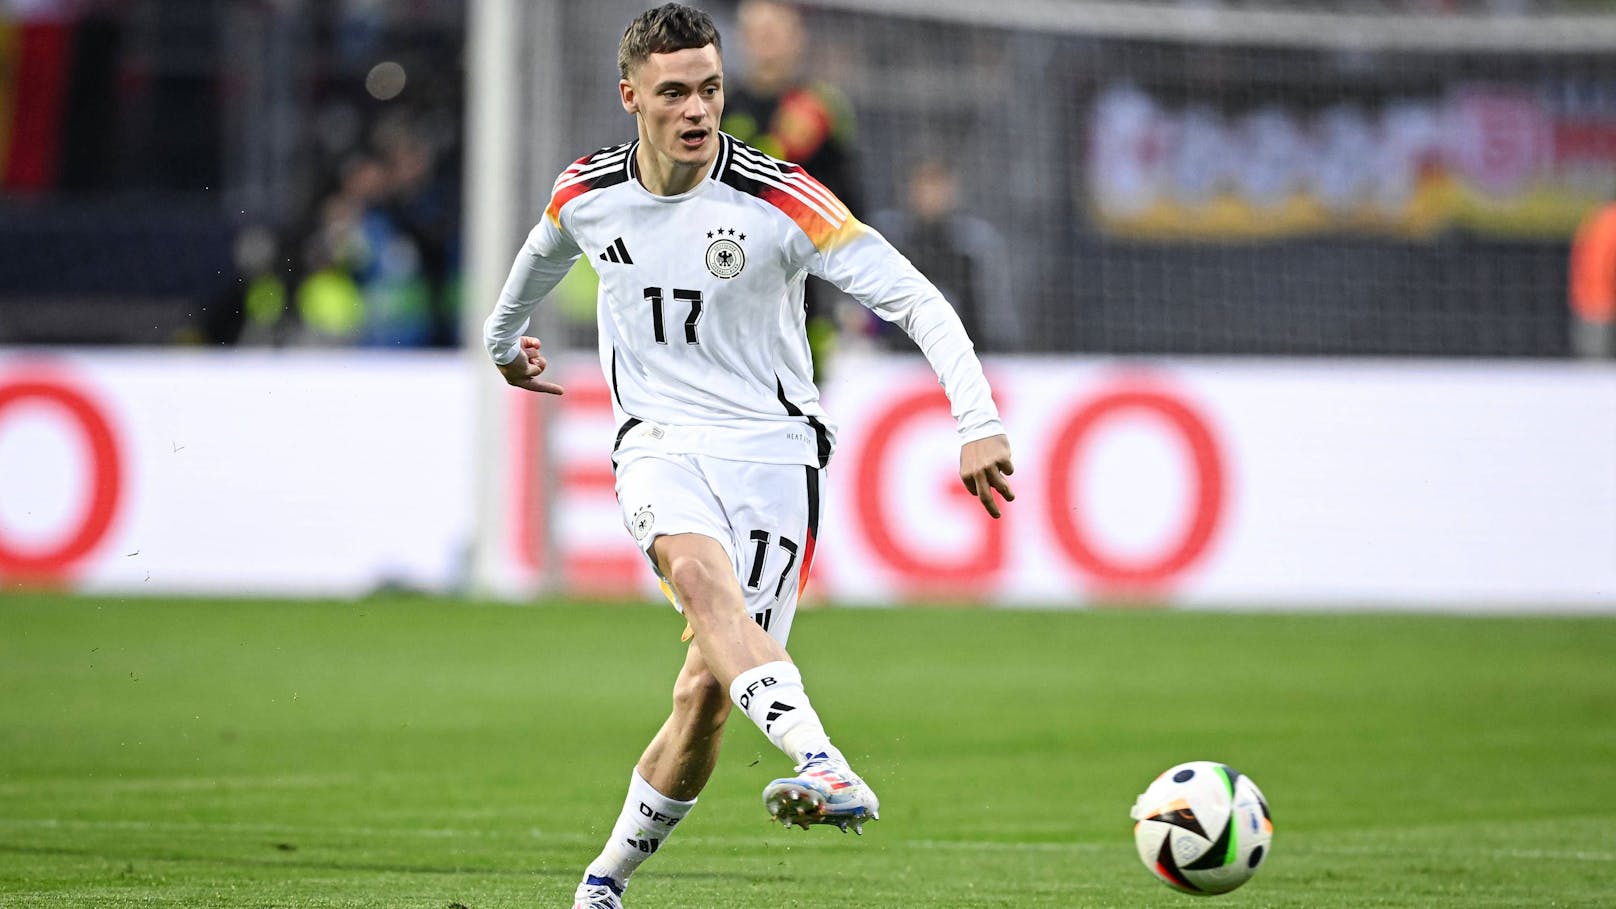 5. Florian Wirtz; Verein: Bayer Leverkusen; Nationalität: Deutschland; Marktwert: 130 Millionen Euro